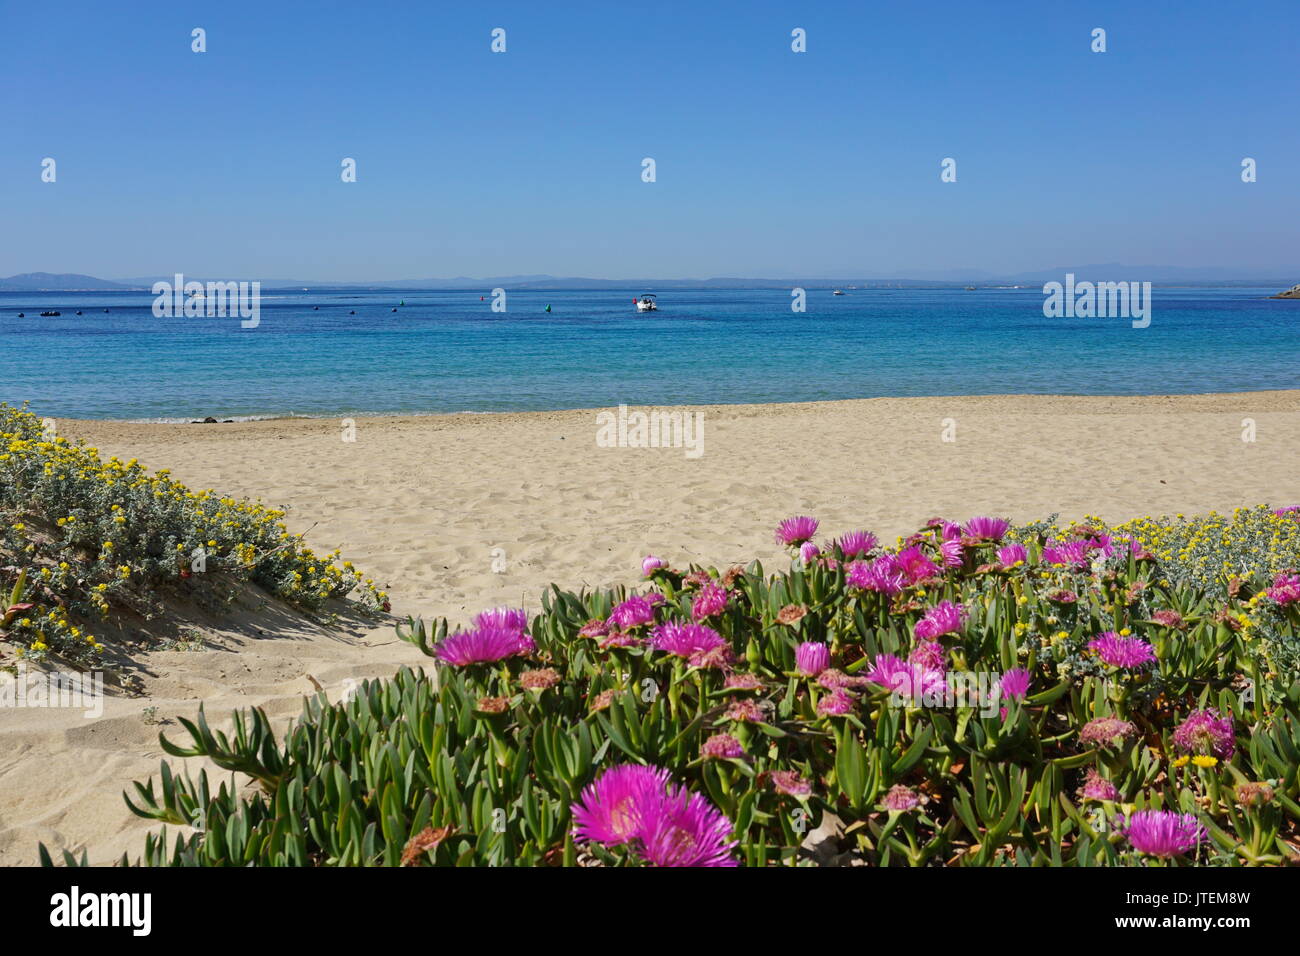 Spagna costa brava spiaggia sabbiosa con fiori in primo piano, mare Mediterraneo, Almadrava, Canyelles Grosses, rose, Catalogna Foto Stock